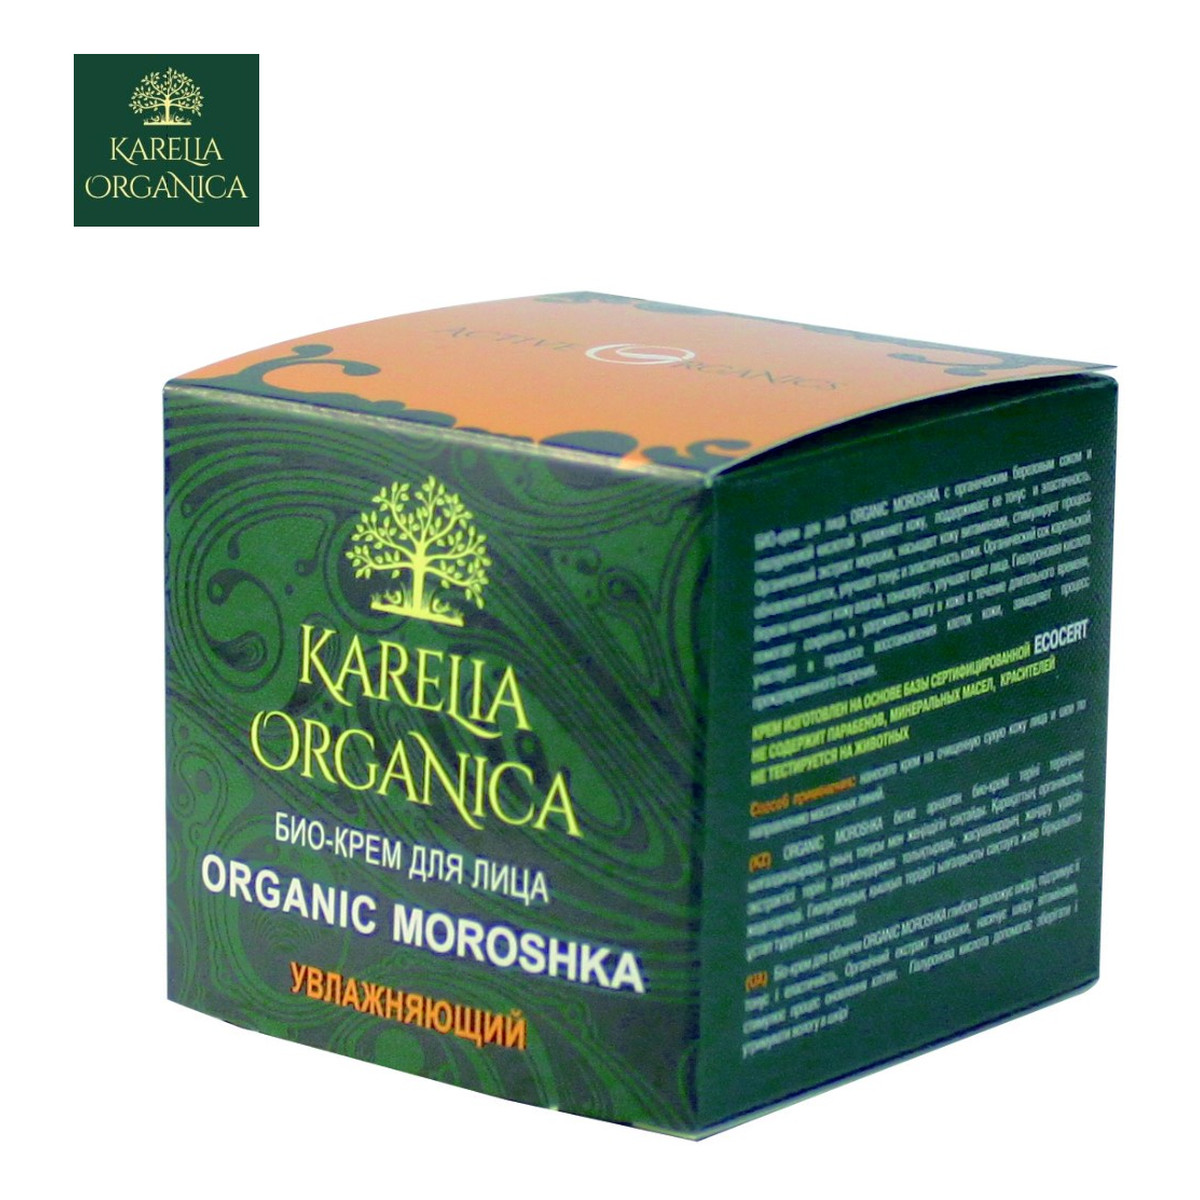 Karelia Organica BIO-KREM DO TWARZY ORGANIC MOROSHKA NAWILŻAJĄCY- Organiczna Karelska malina moroszka i sok brzozowy, kwas hialuronowy 50ml